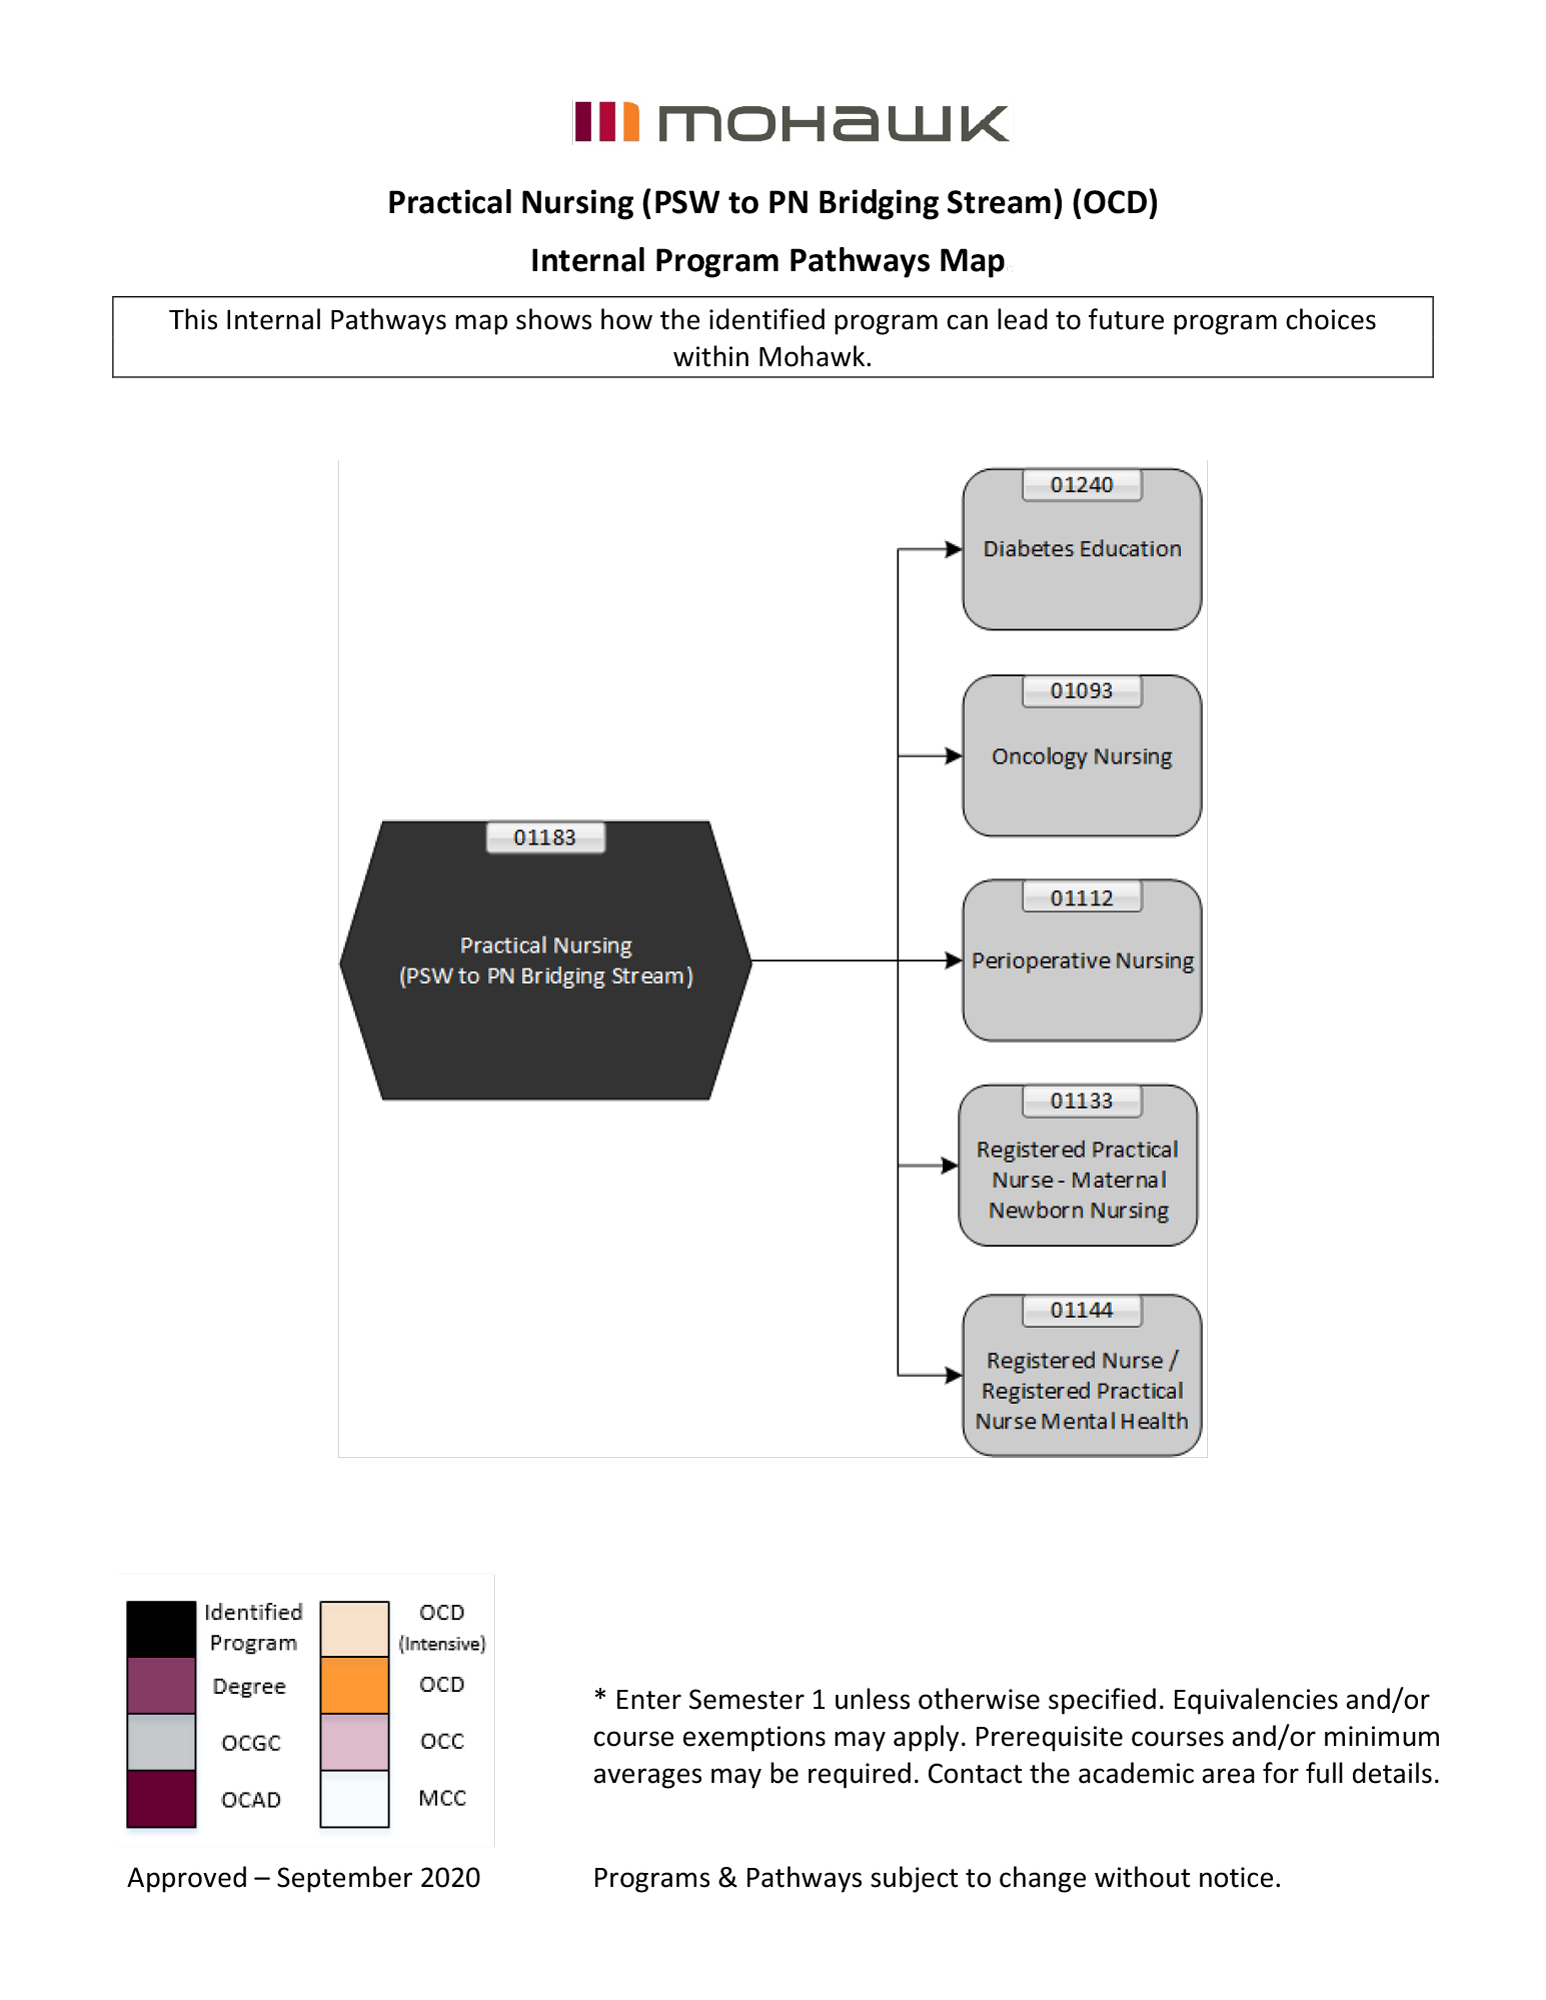 Practical Nursing PSW to PN Bridging Stream pathways map